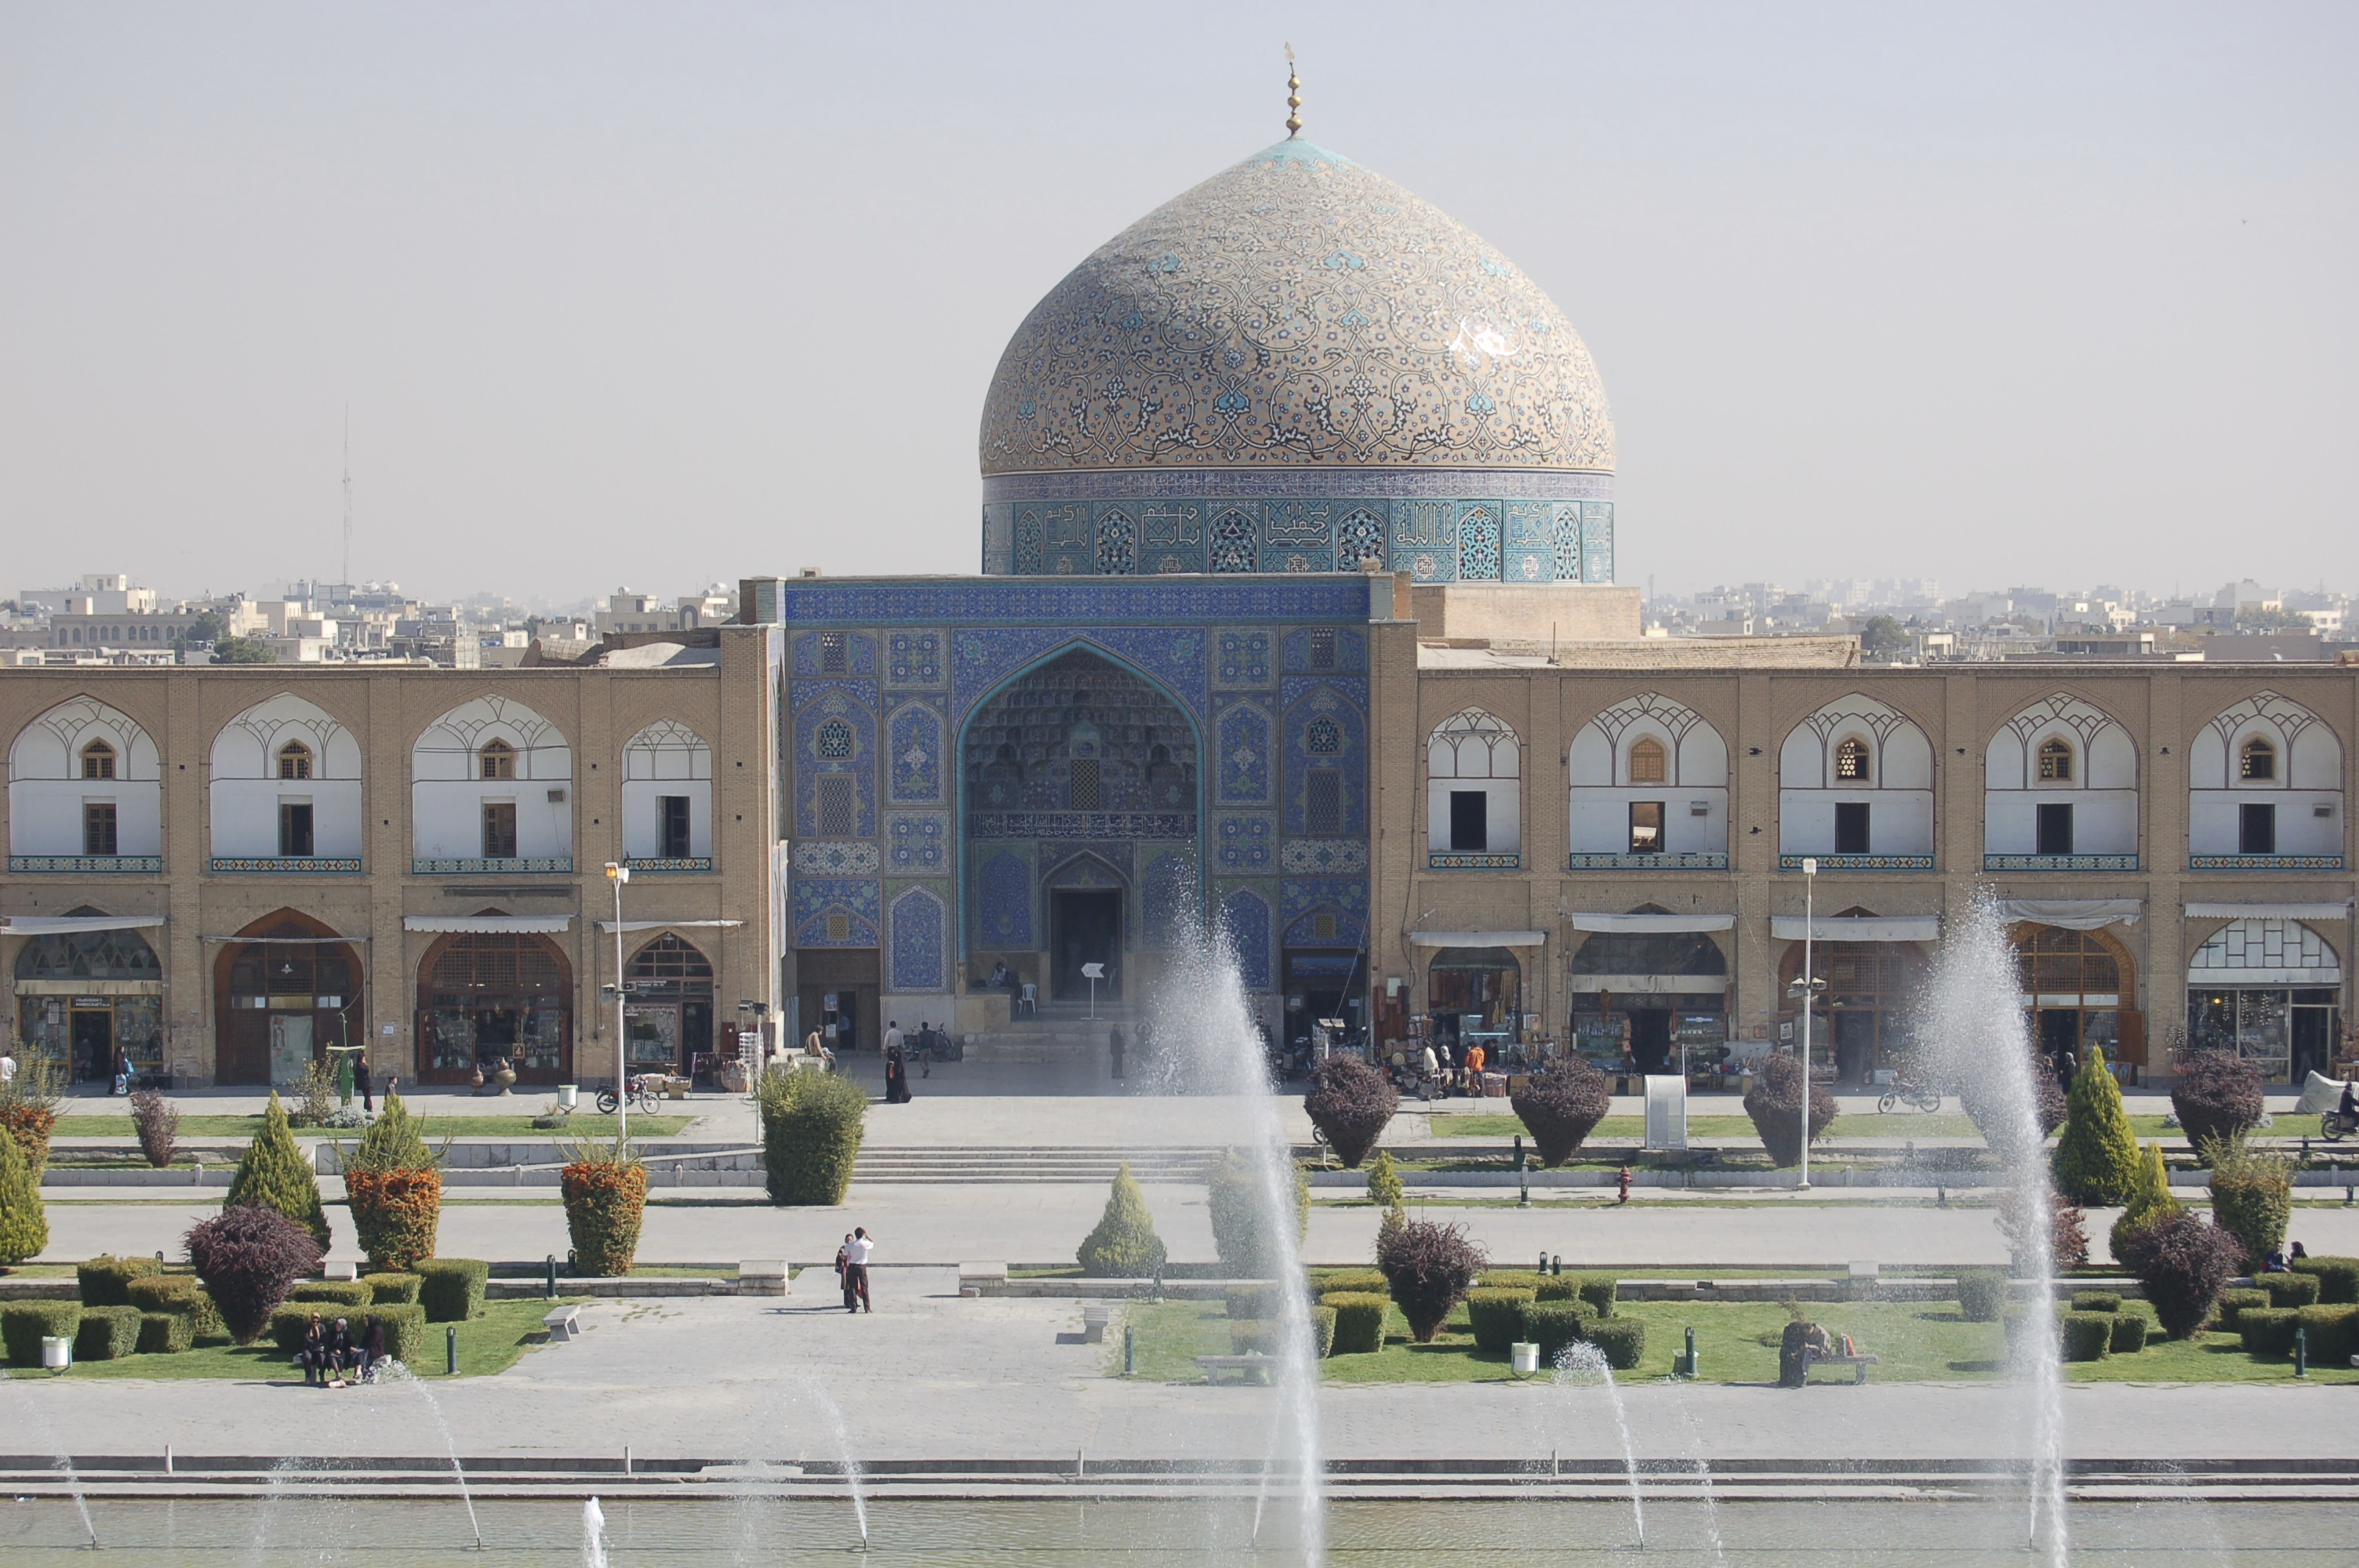 Esfan Mosque, Iran